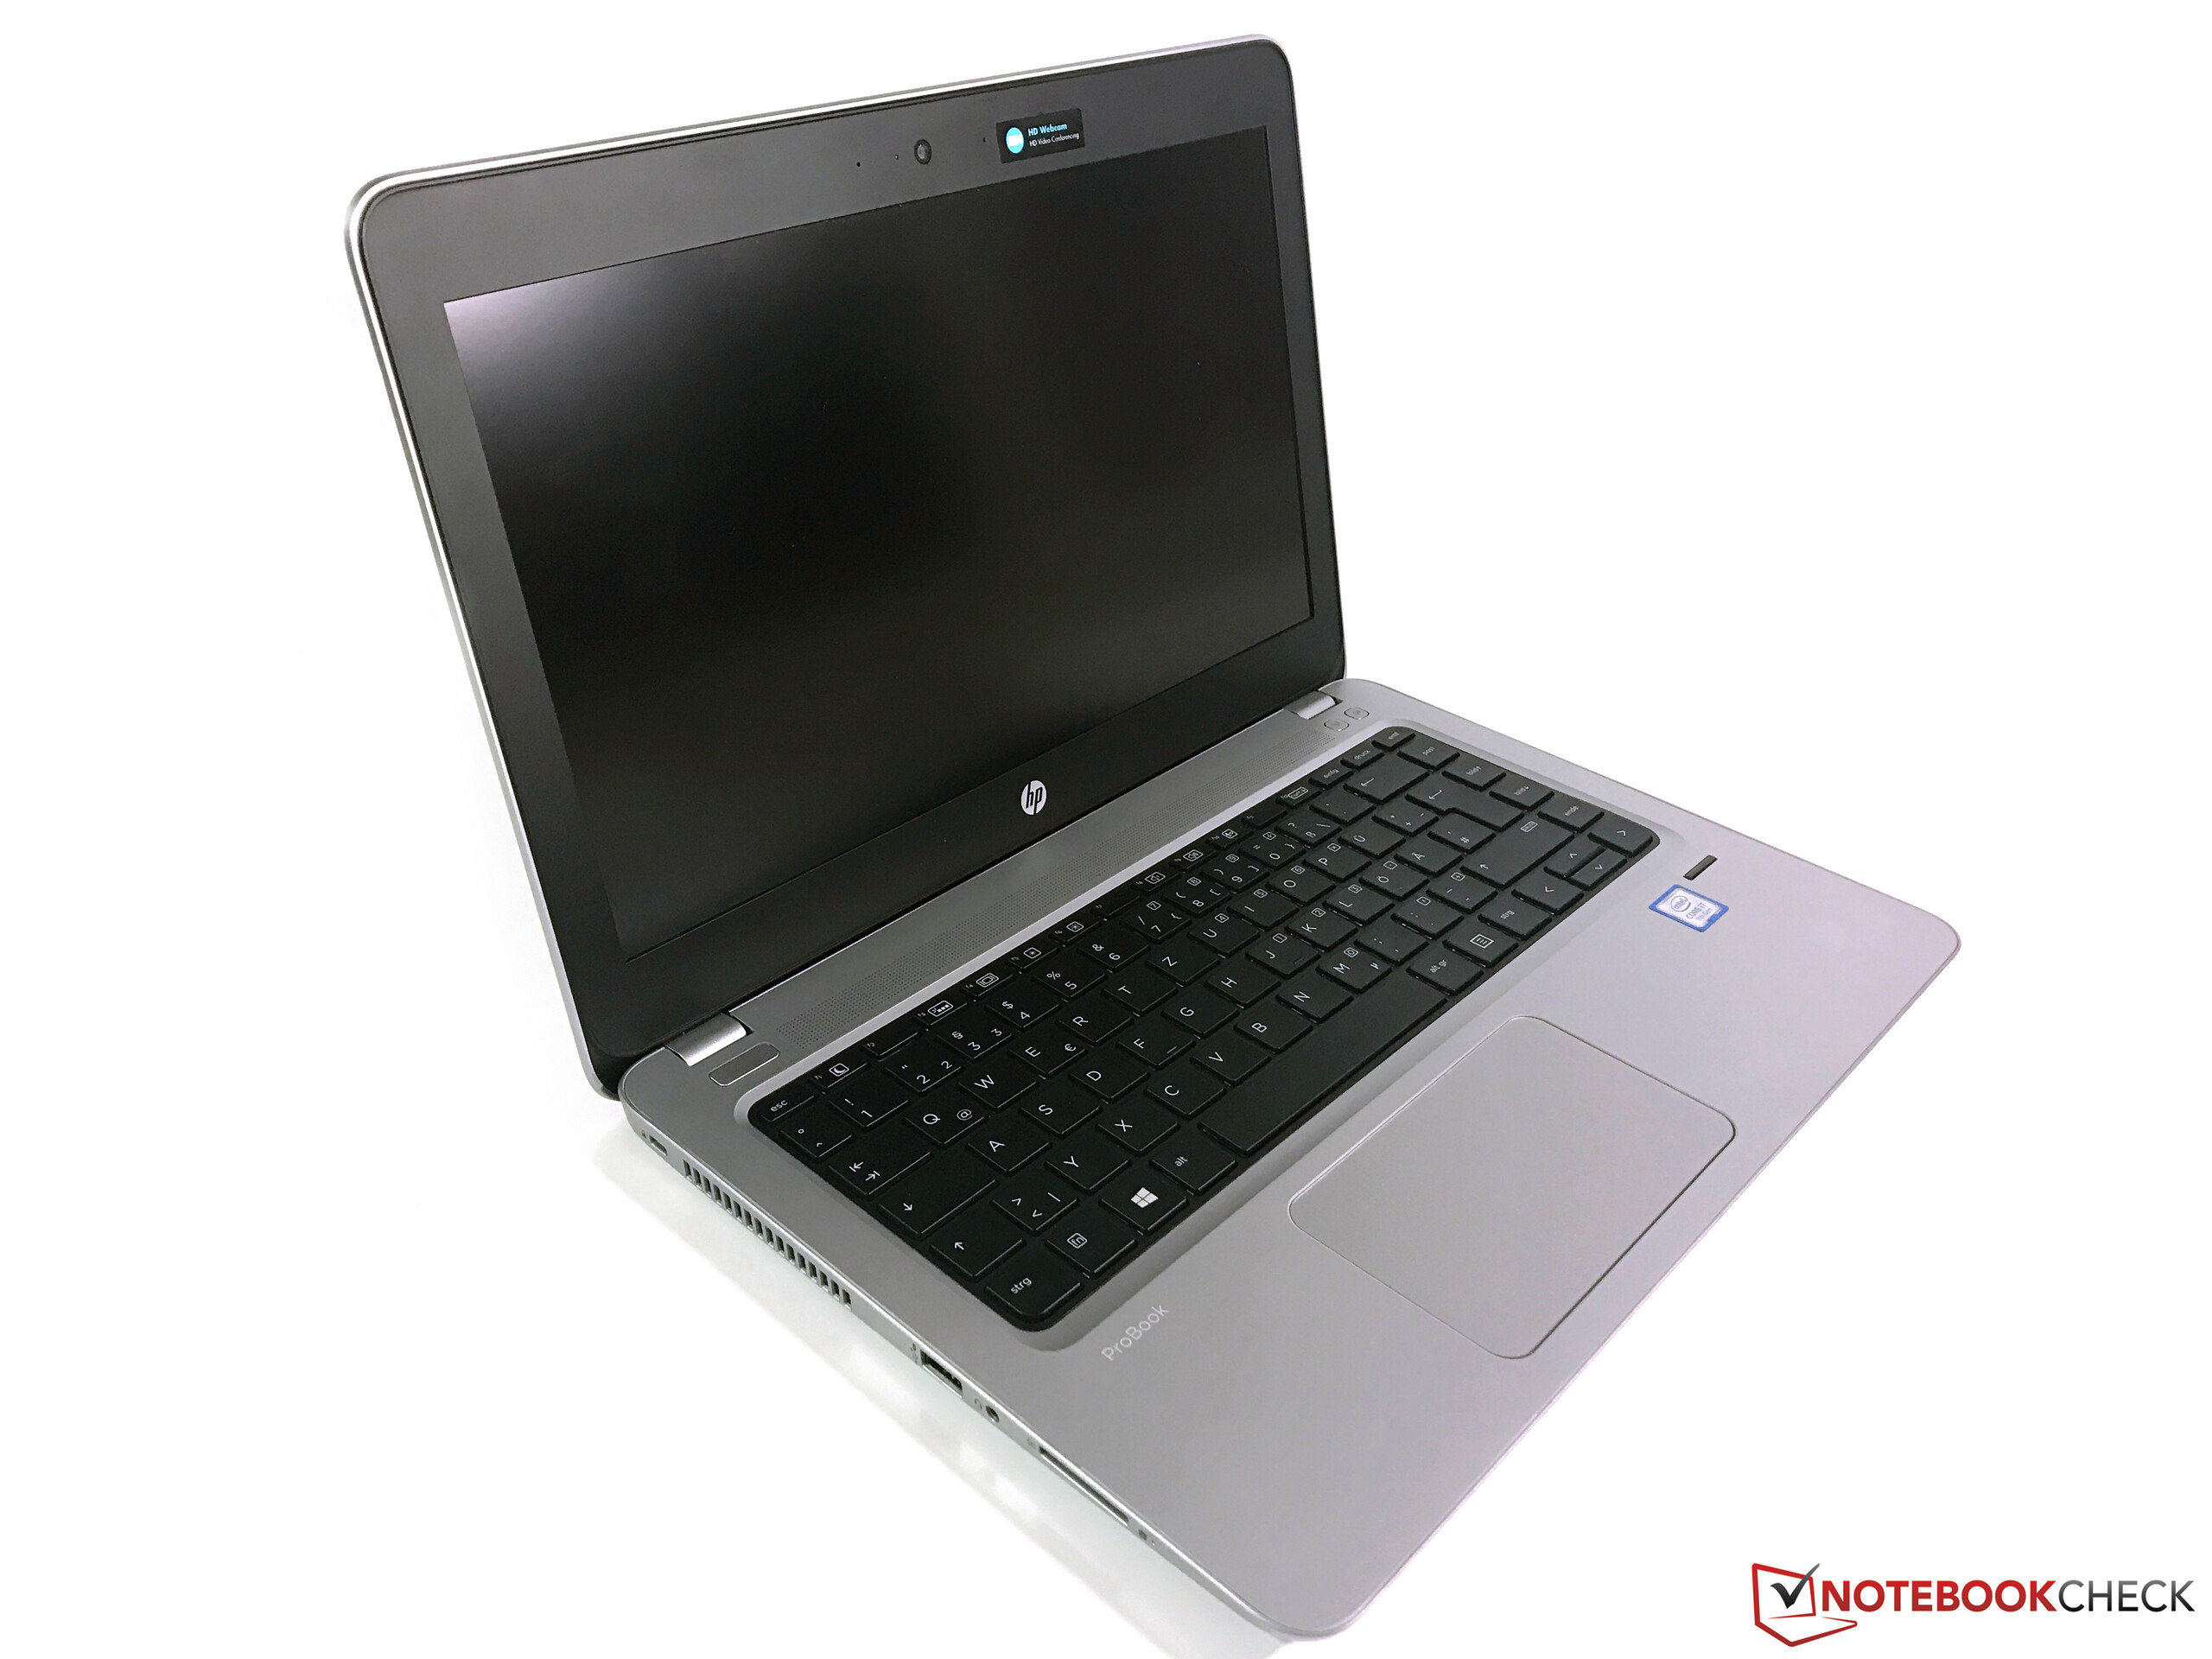 ProBook 430 G4 Notebook PC